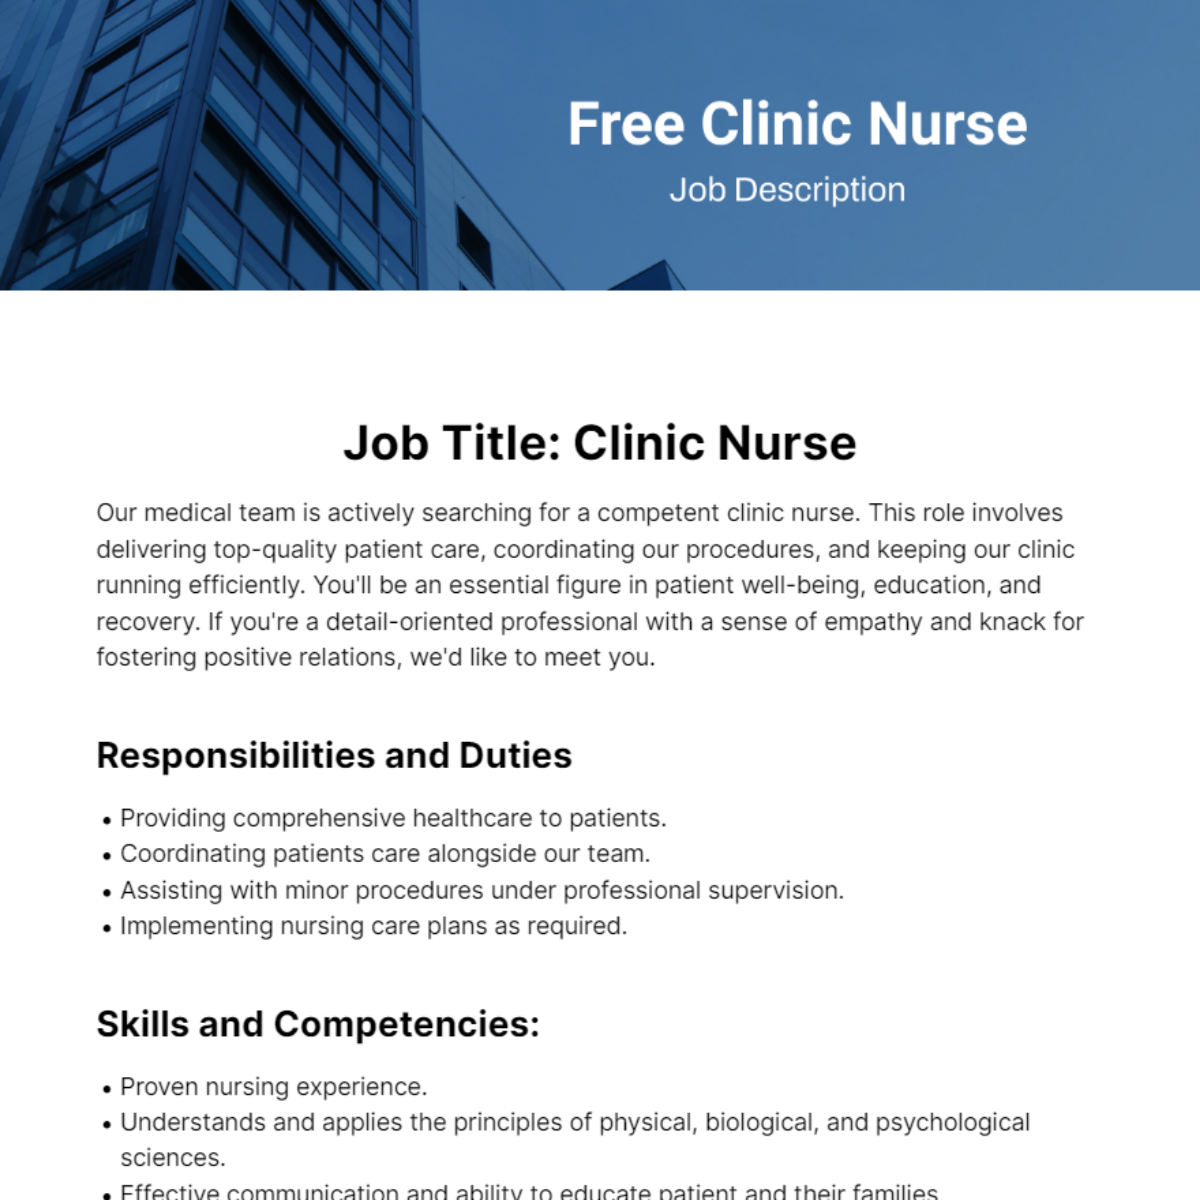 Free Clinic Nurse Job Description Template